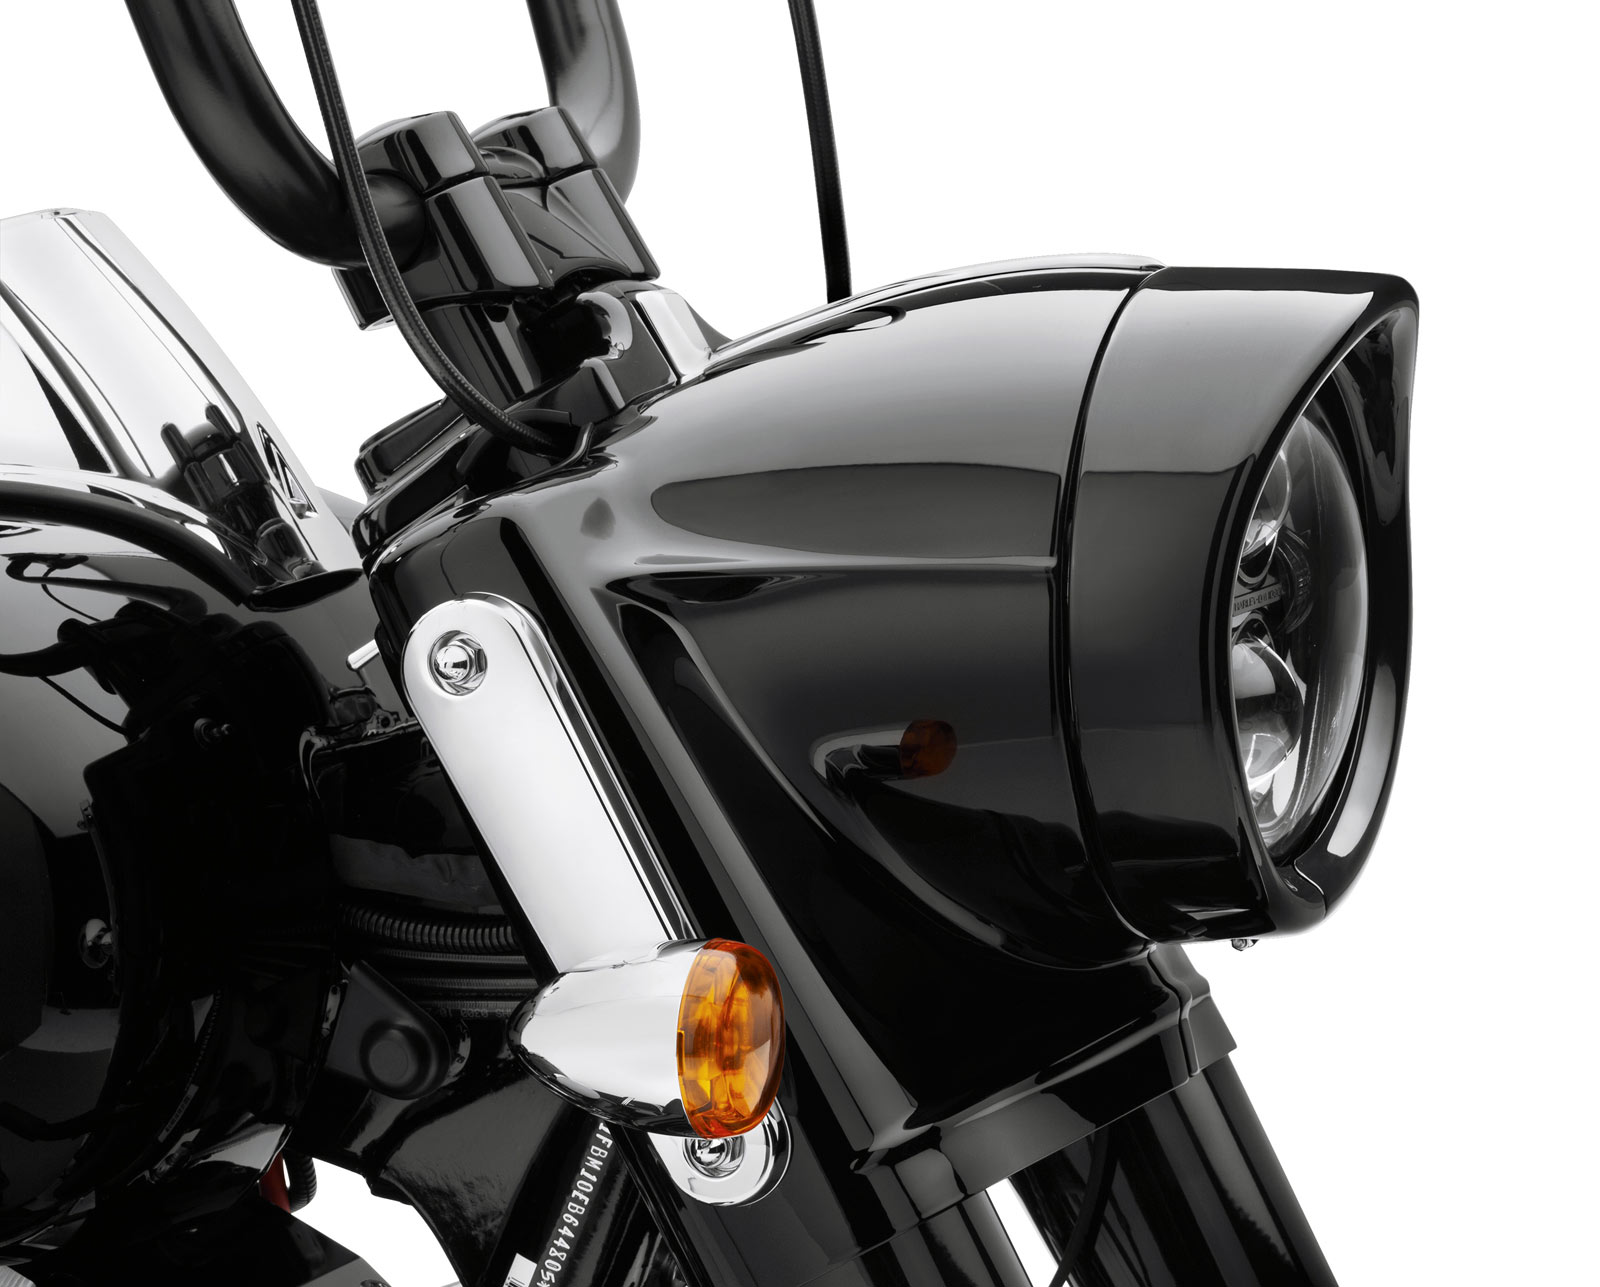 7/" CHROME HEADLIGHT VISOR for Harley Davidson Softail Road King